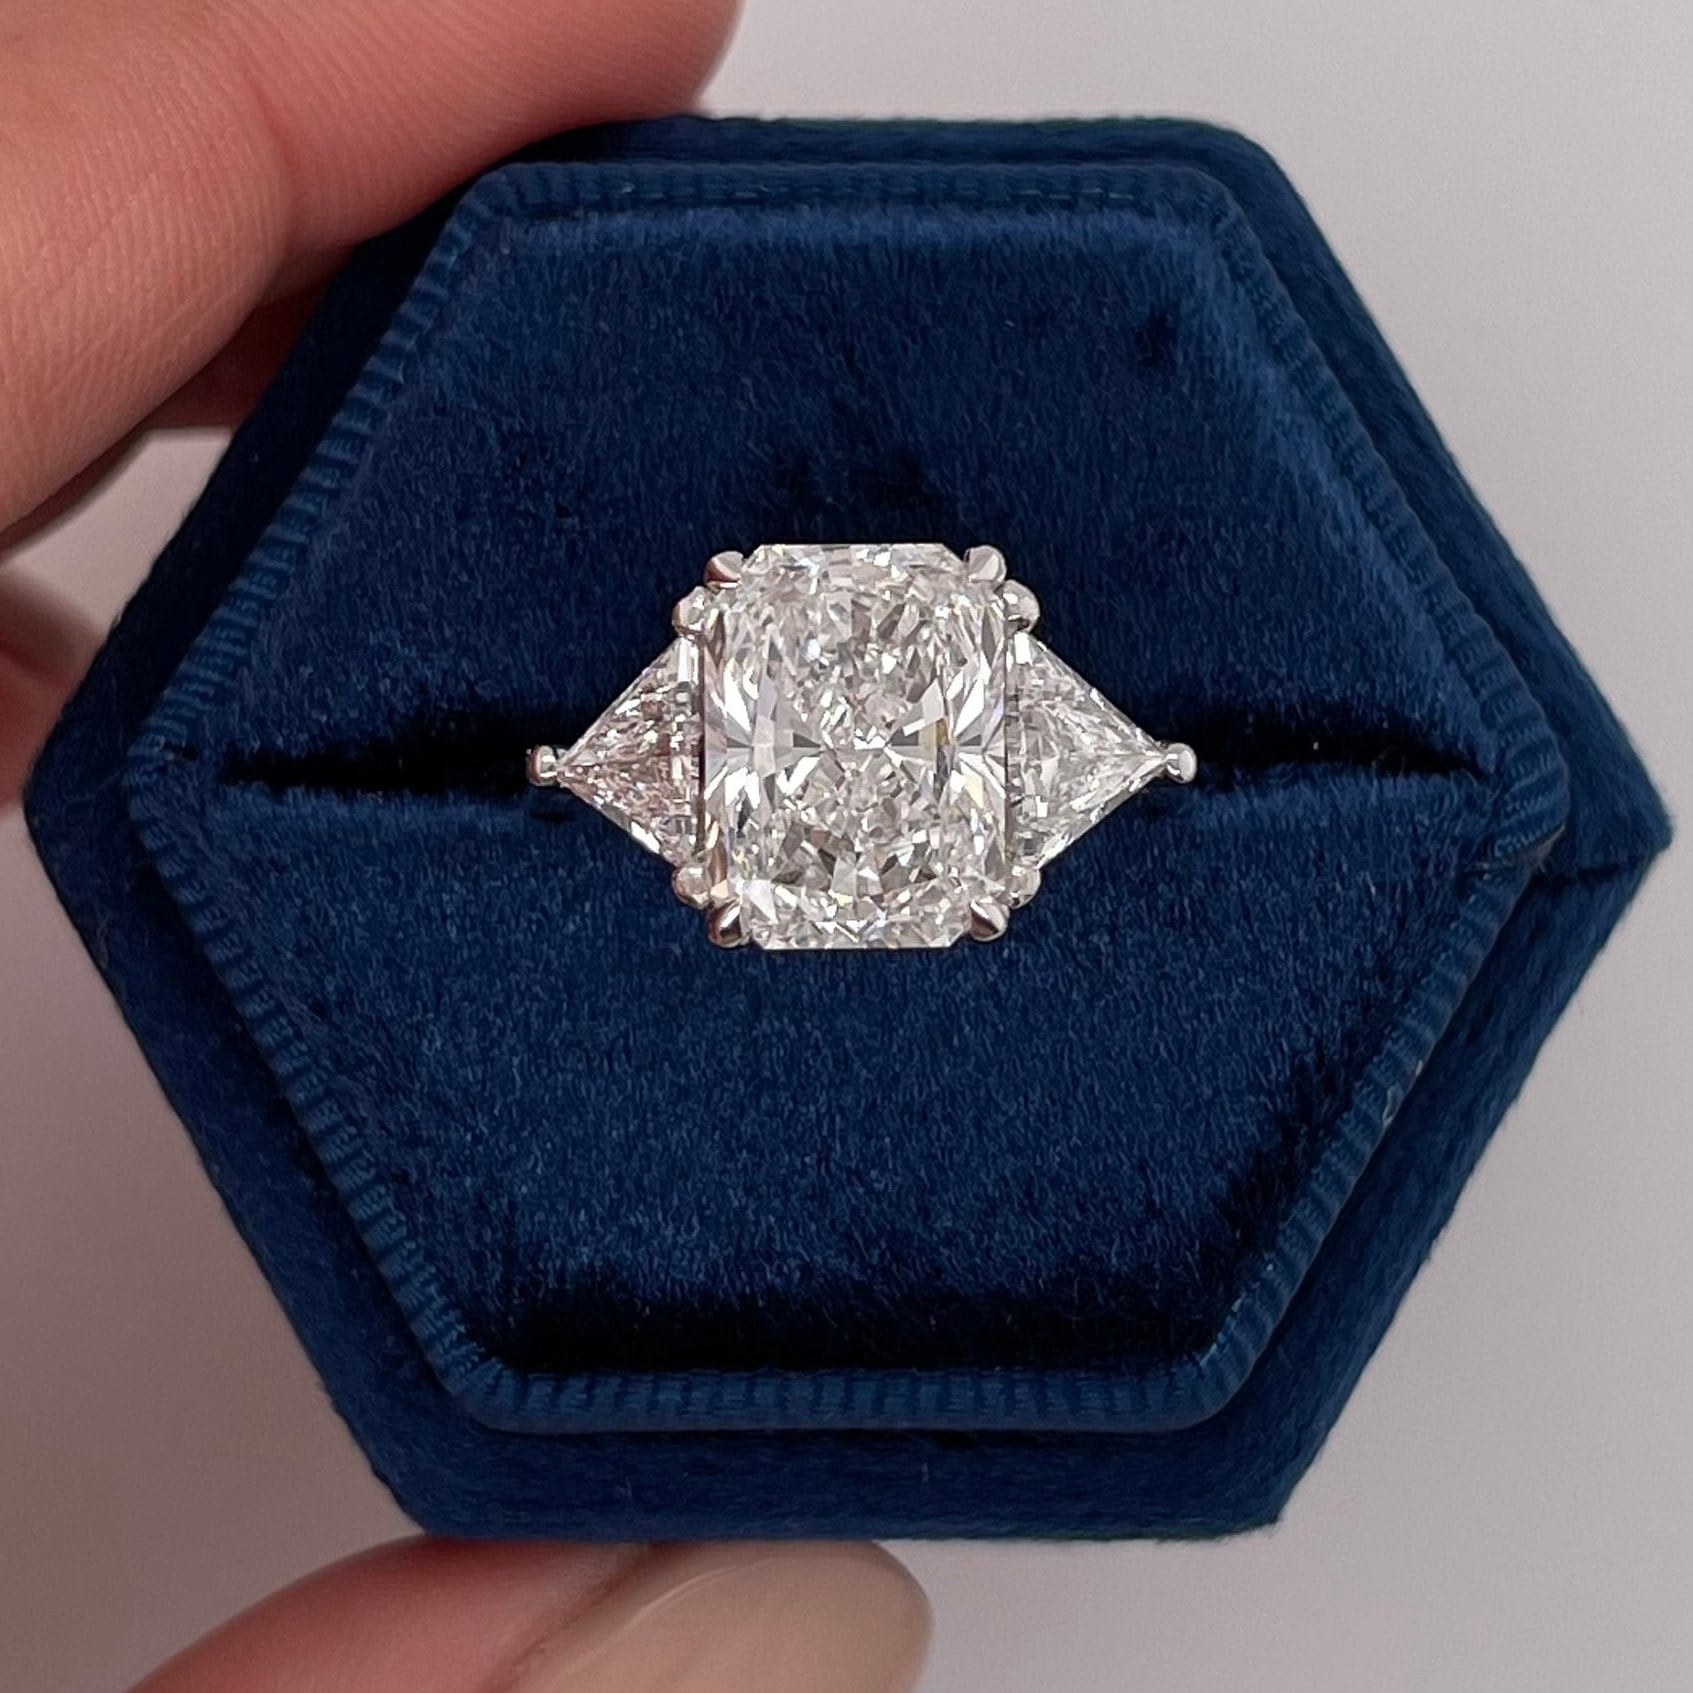 5 Karat Diamant-Verlobungsring Igi Zertifiziert E Farbe Vvs2 Klarheit Labor Gewachsen Strahlender Schnitt 18K Weißgold Ring von KosherDiamond